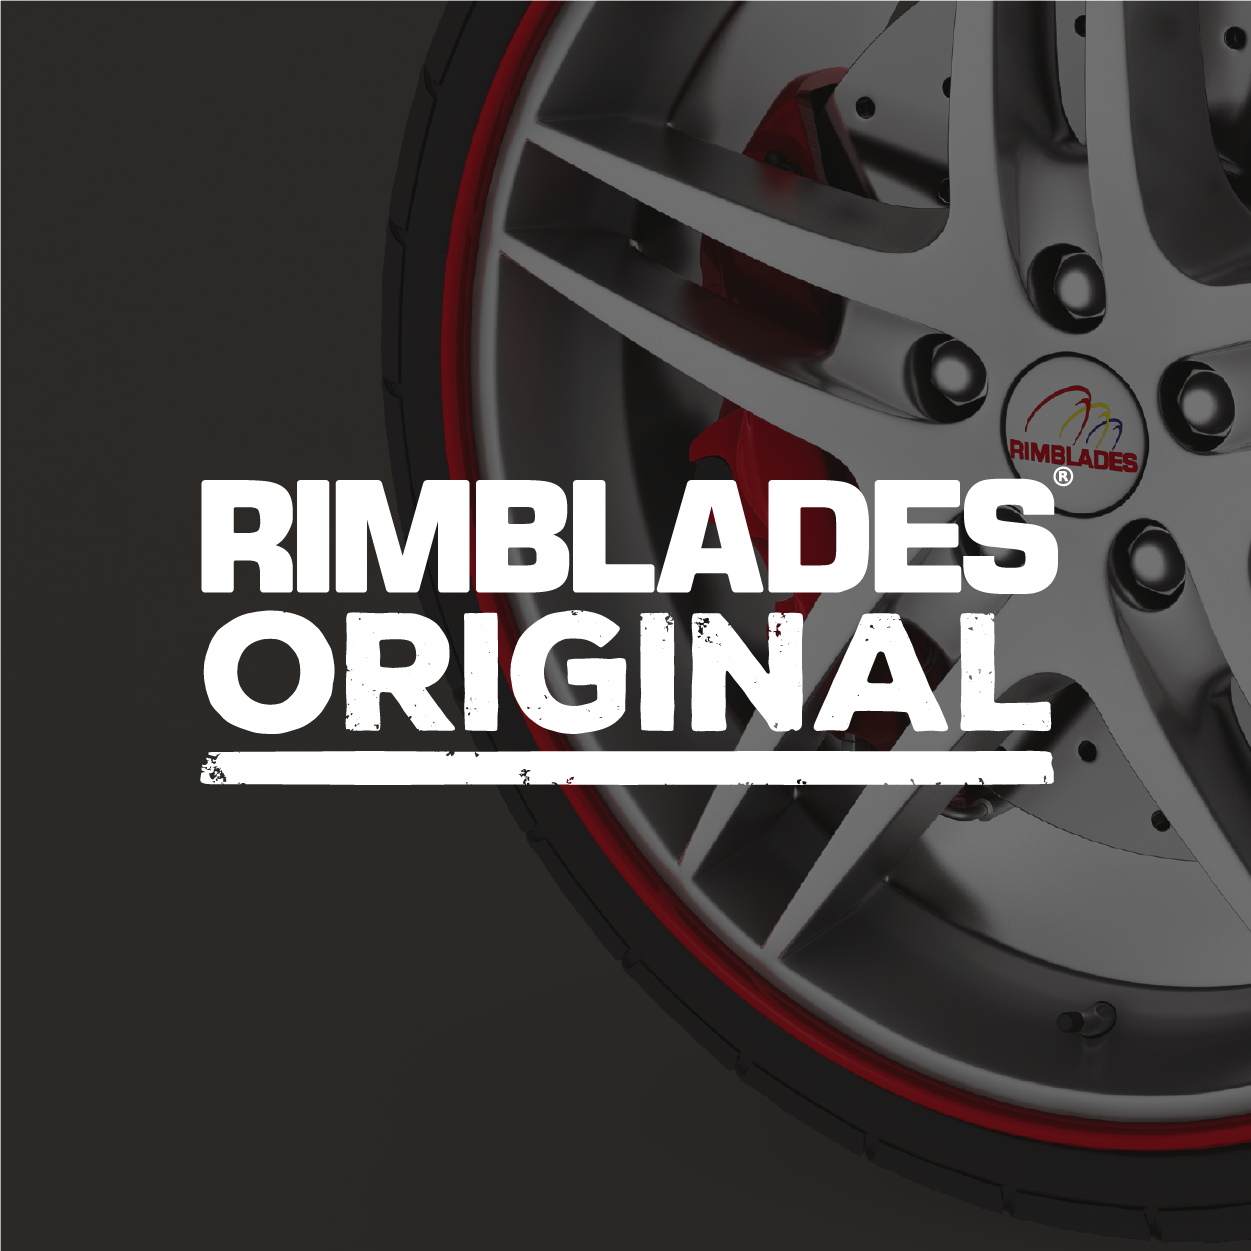 Rimblades Alloy Wheel Rim Protectors Red